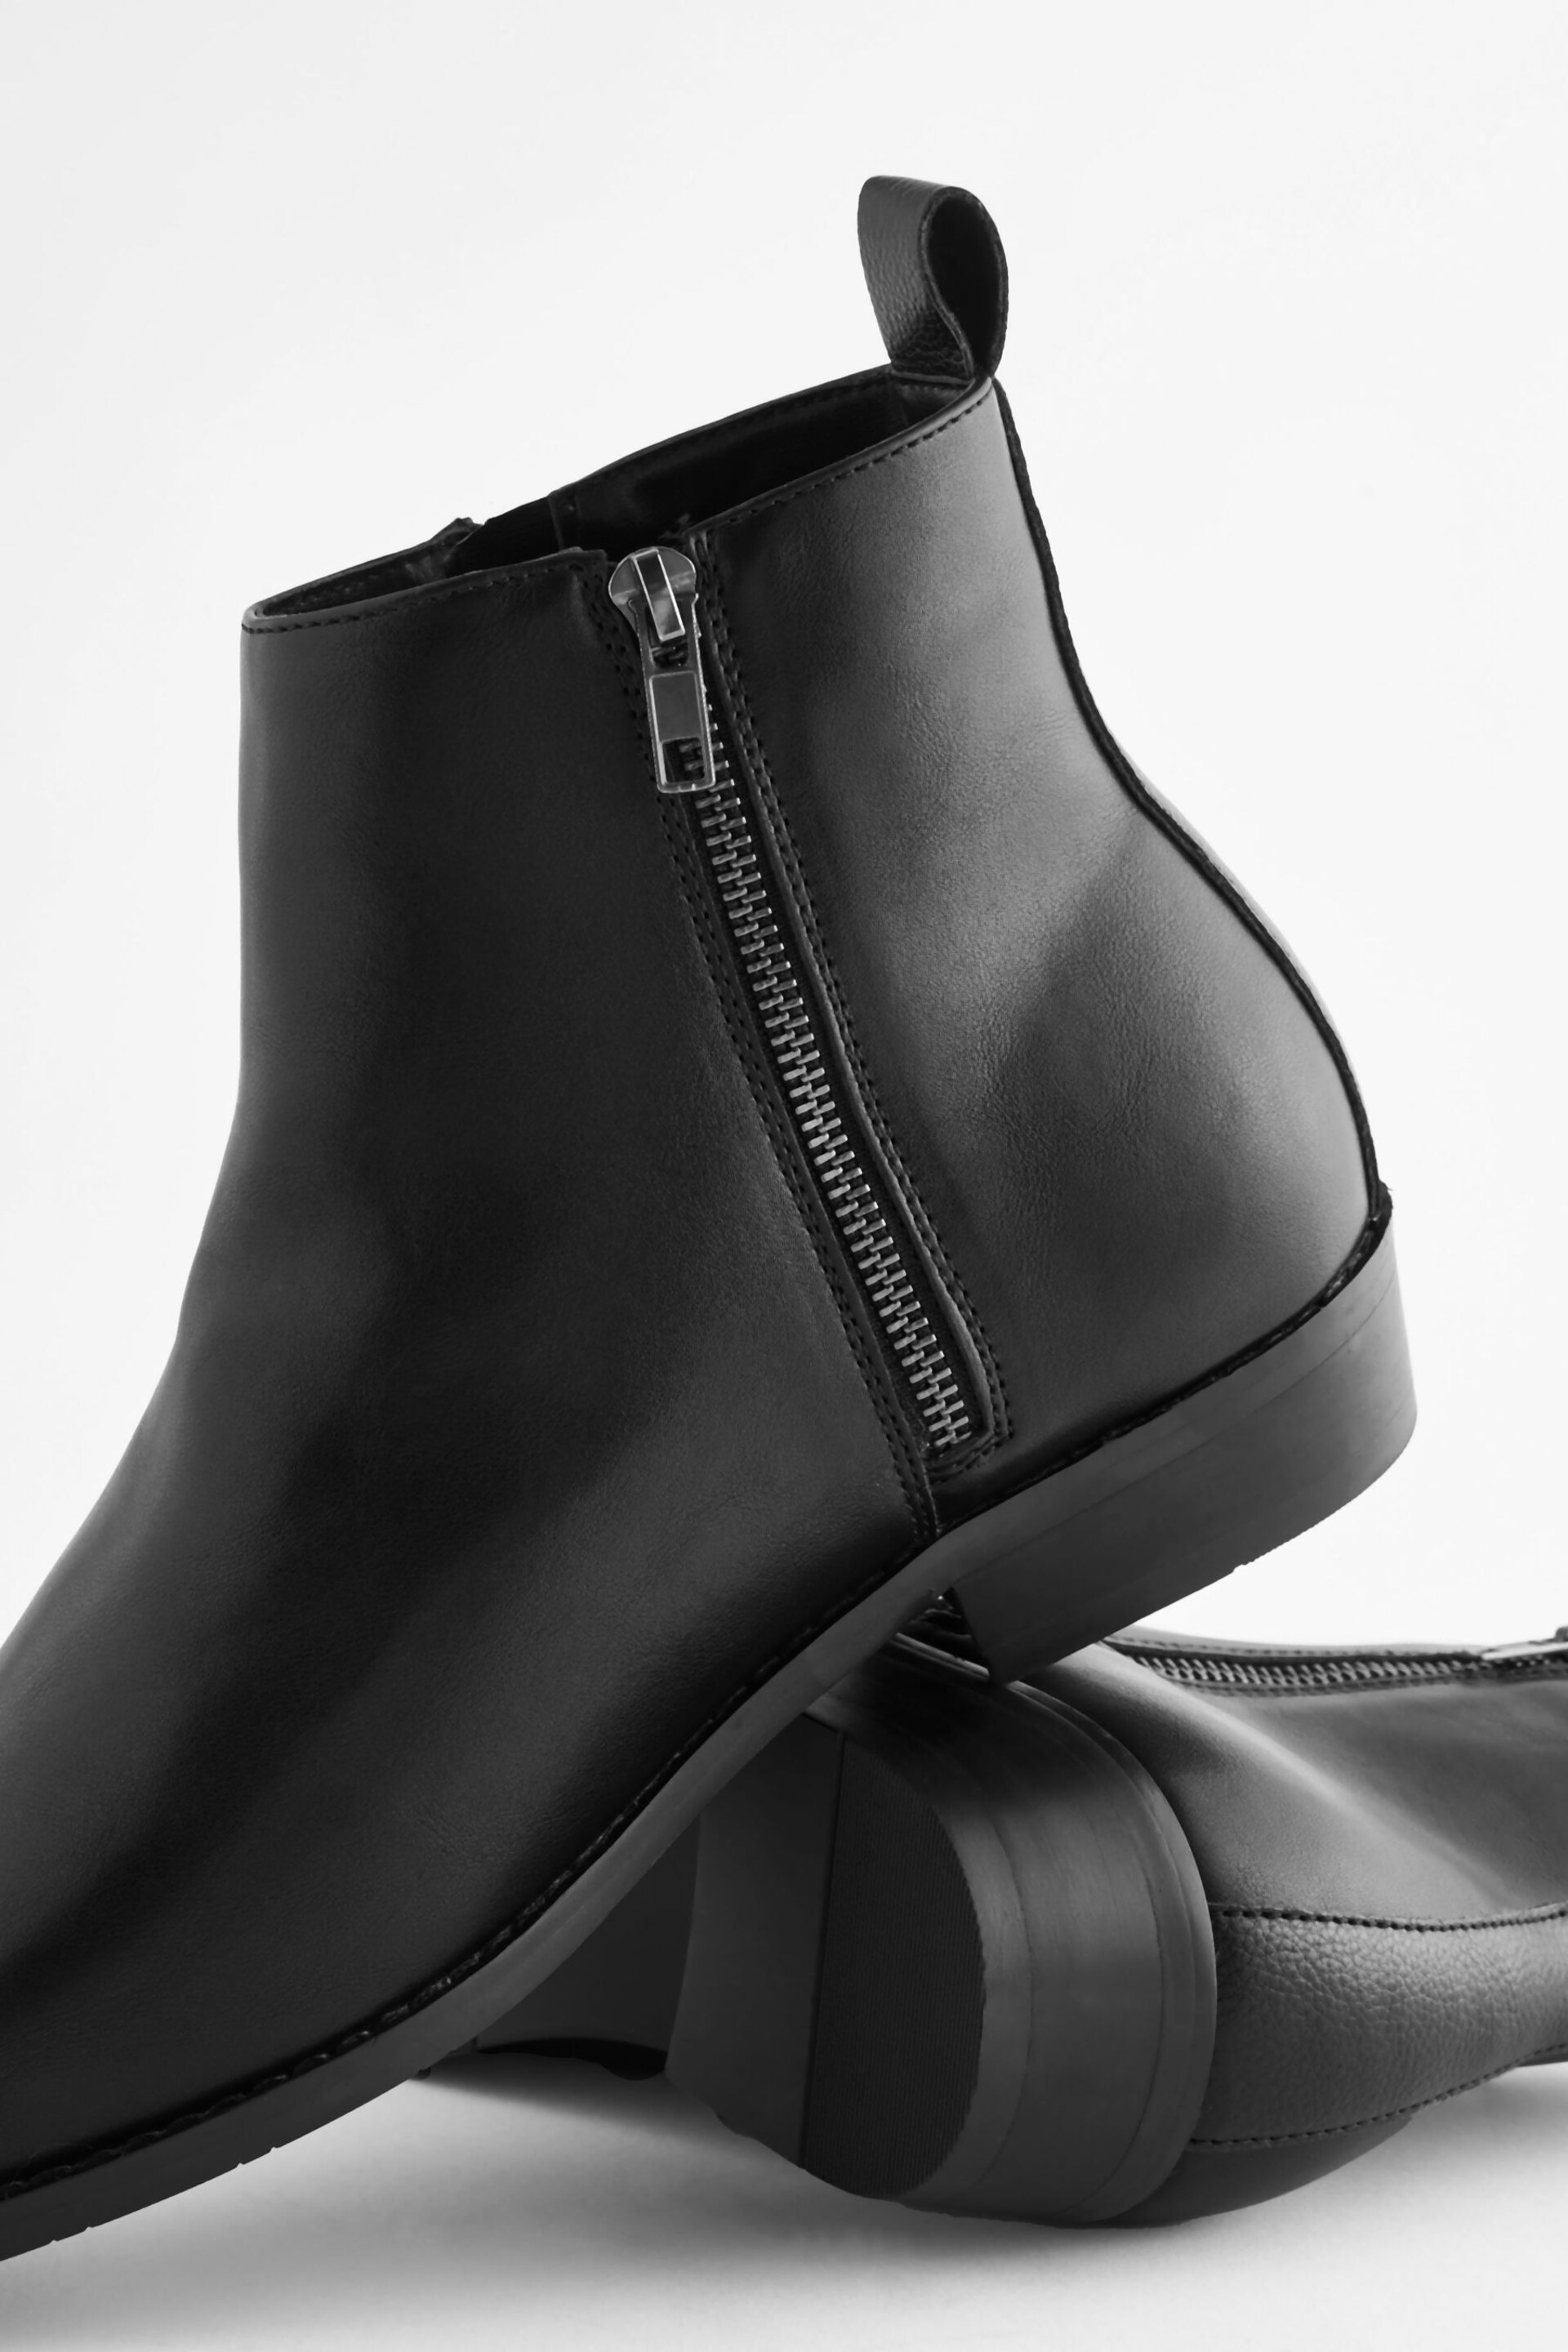 Black EDIT Zip Chelsea Boots - Image 6 of 8